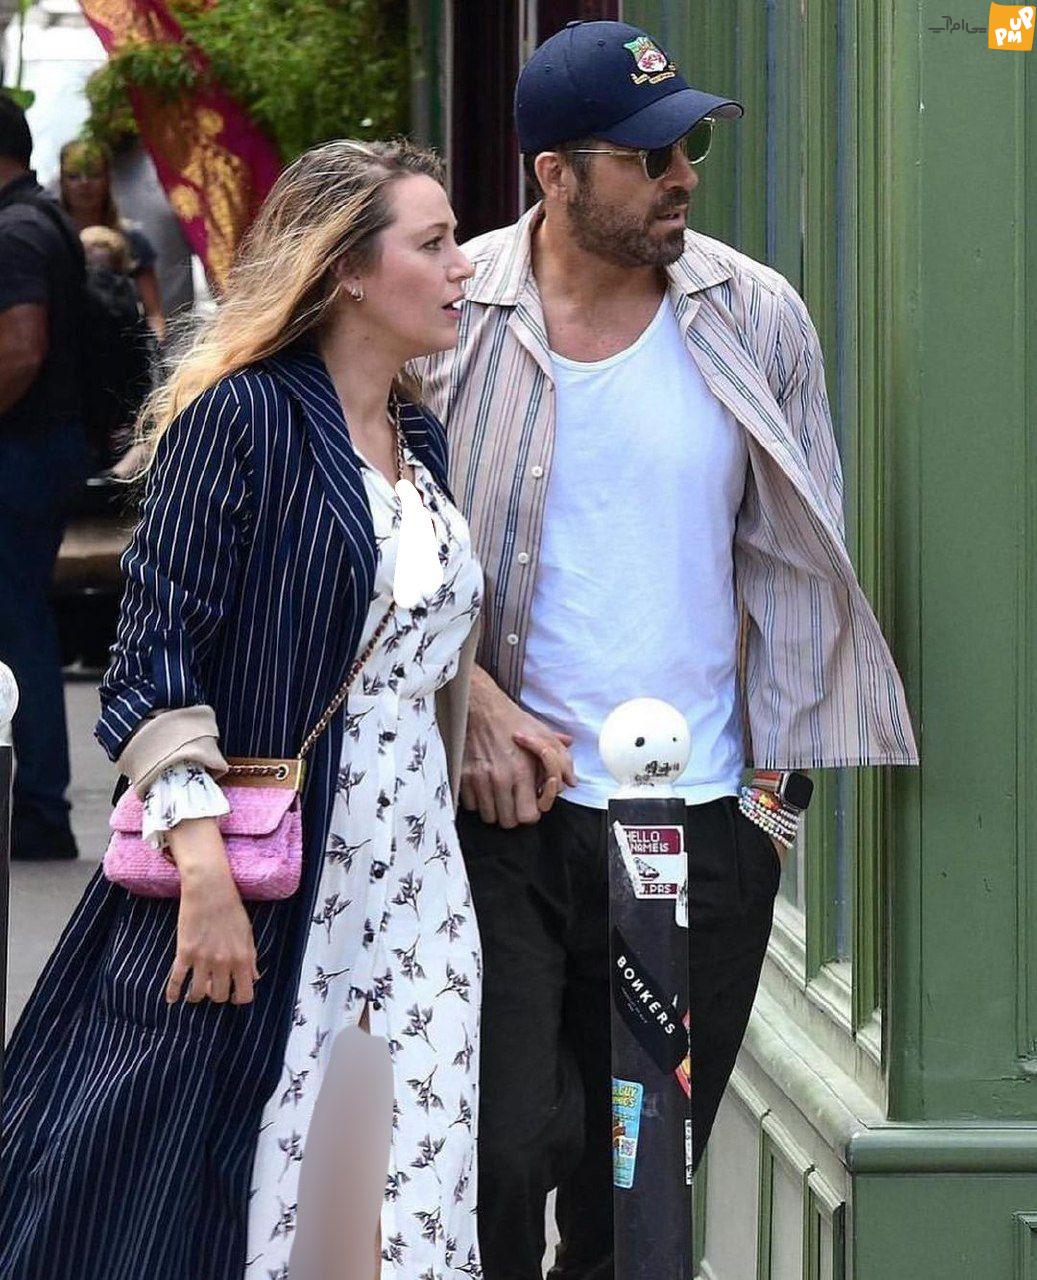 پیاده روی رایان رینولدز 46 ساله همراه با همسرش، بلیک لایولی 35 ساله در پاریس! | تصاویر